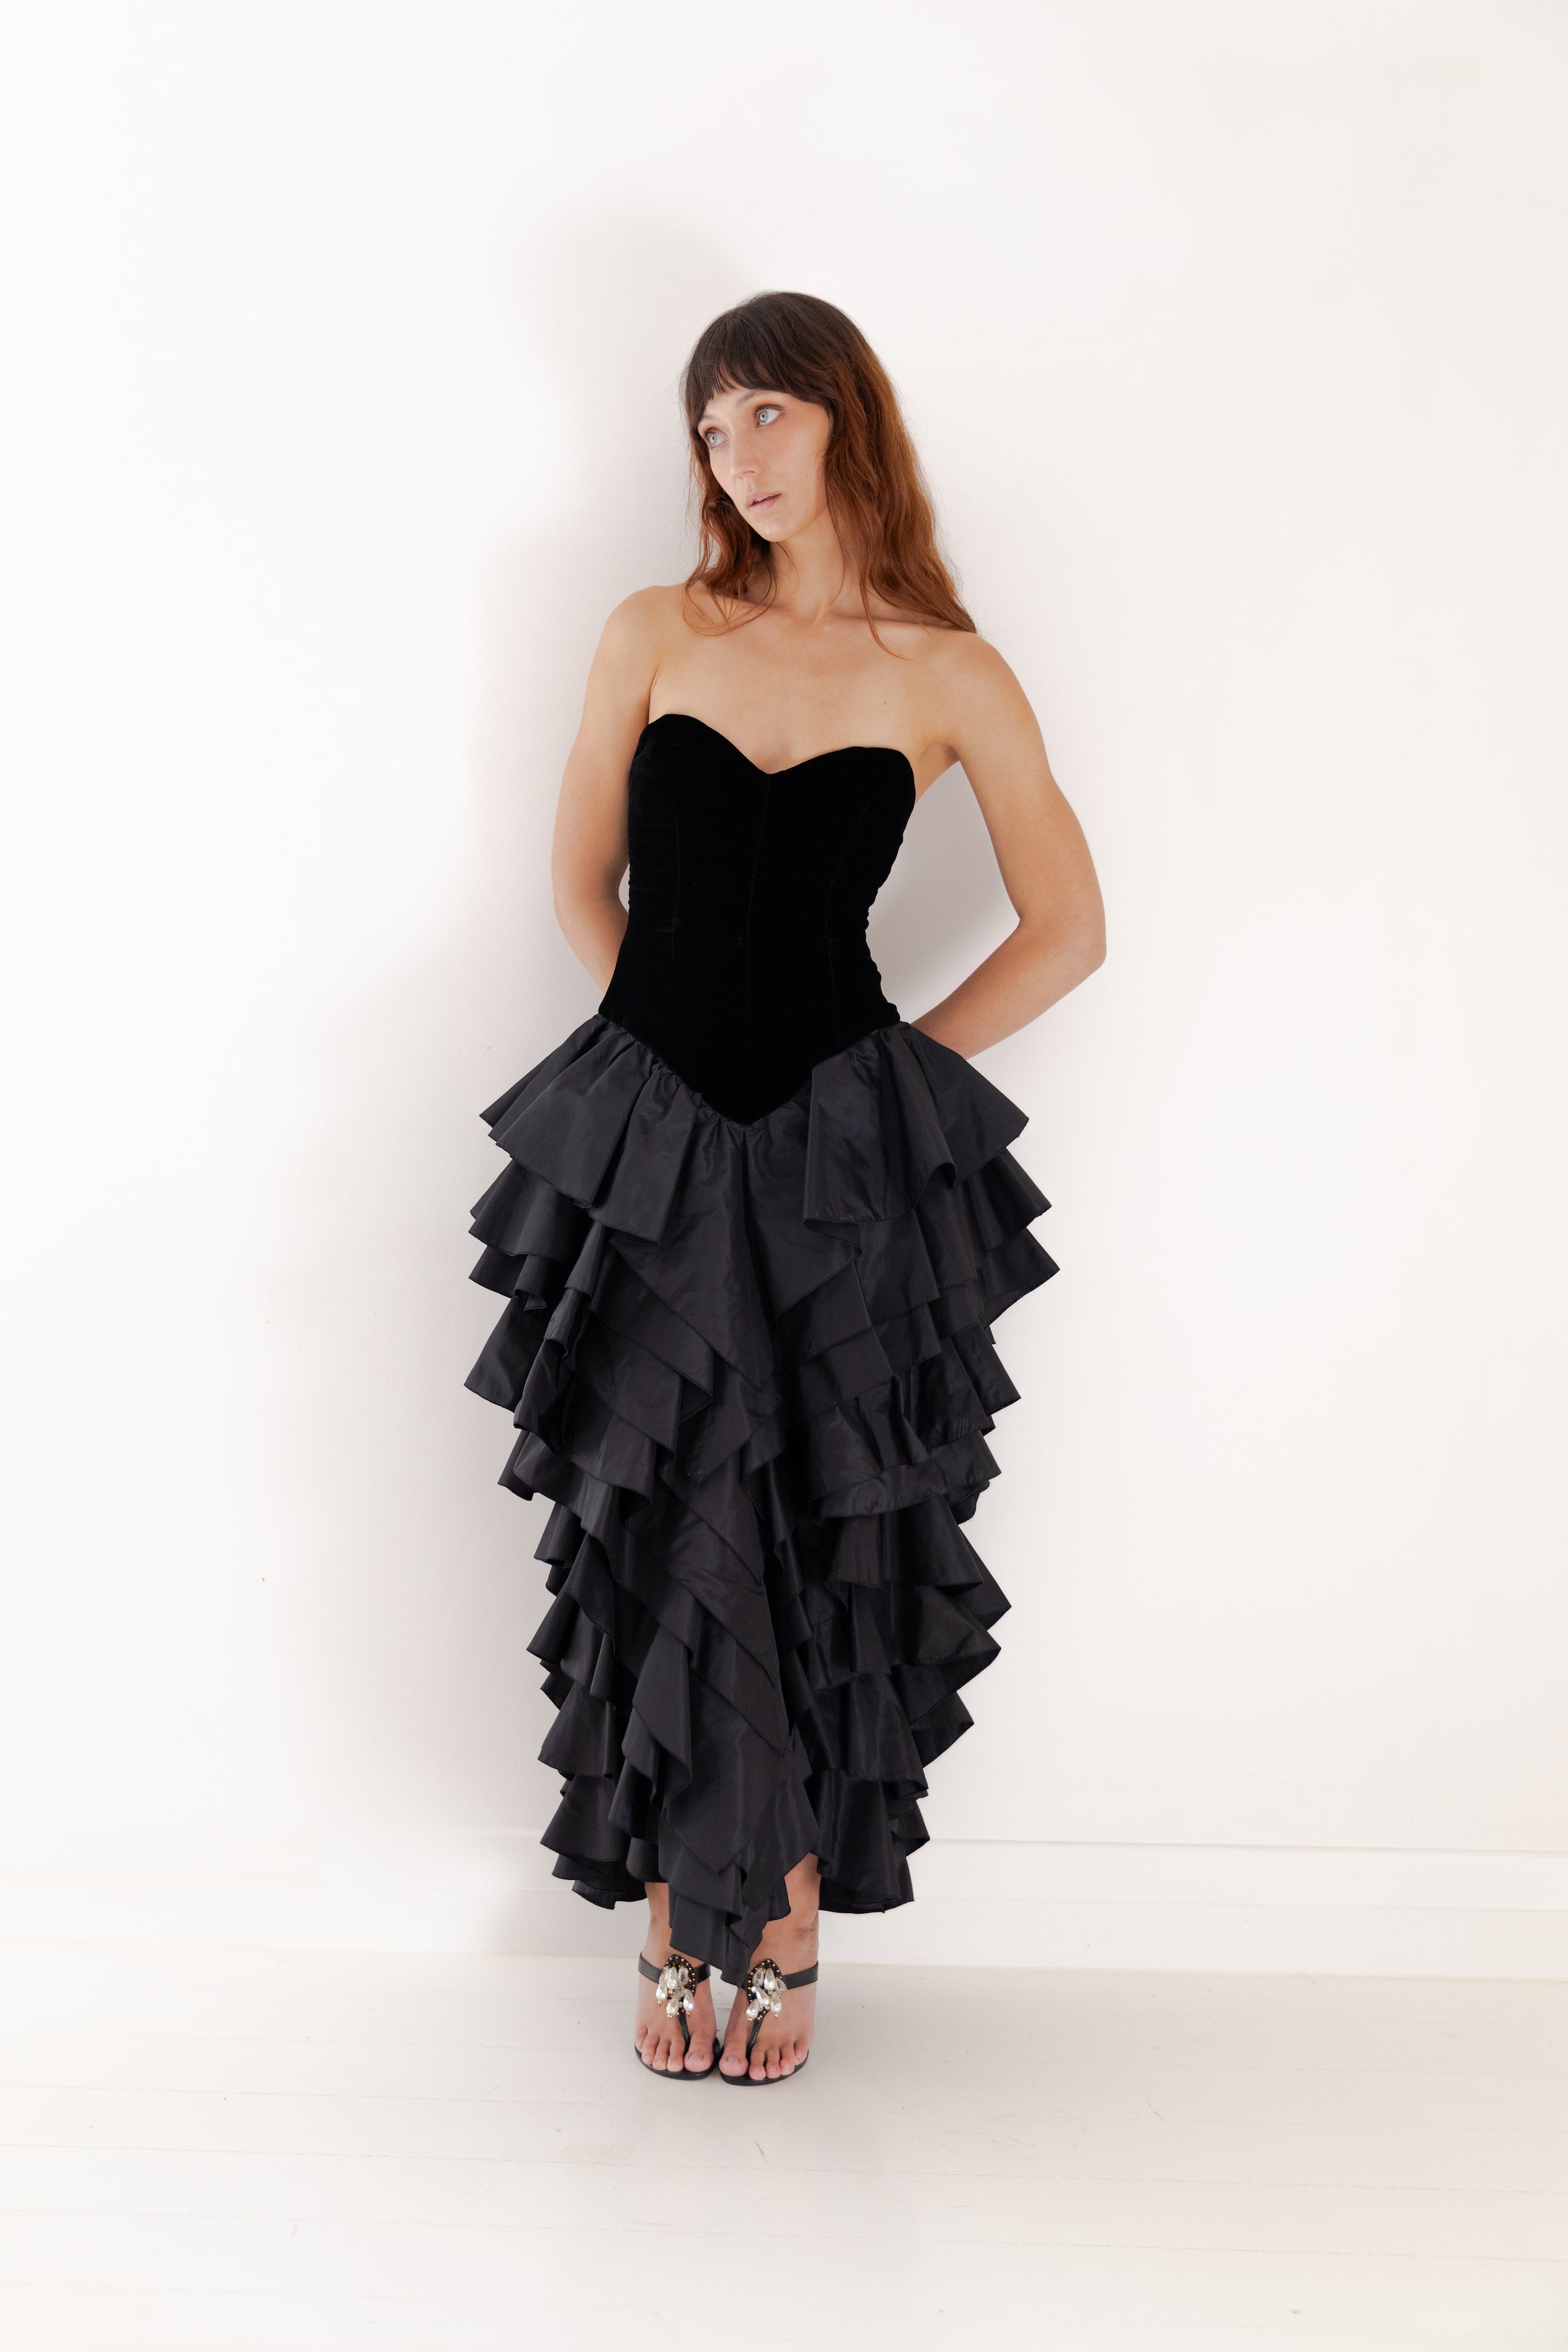 Loris Azzaro <br> 80's strapless velvet & taffeta ruffle skirt gown